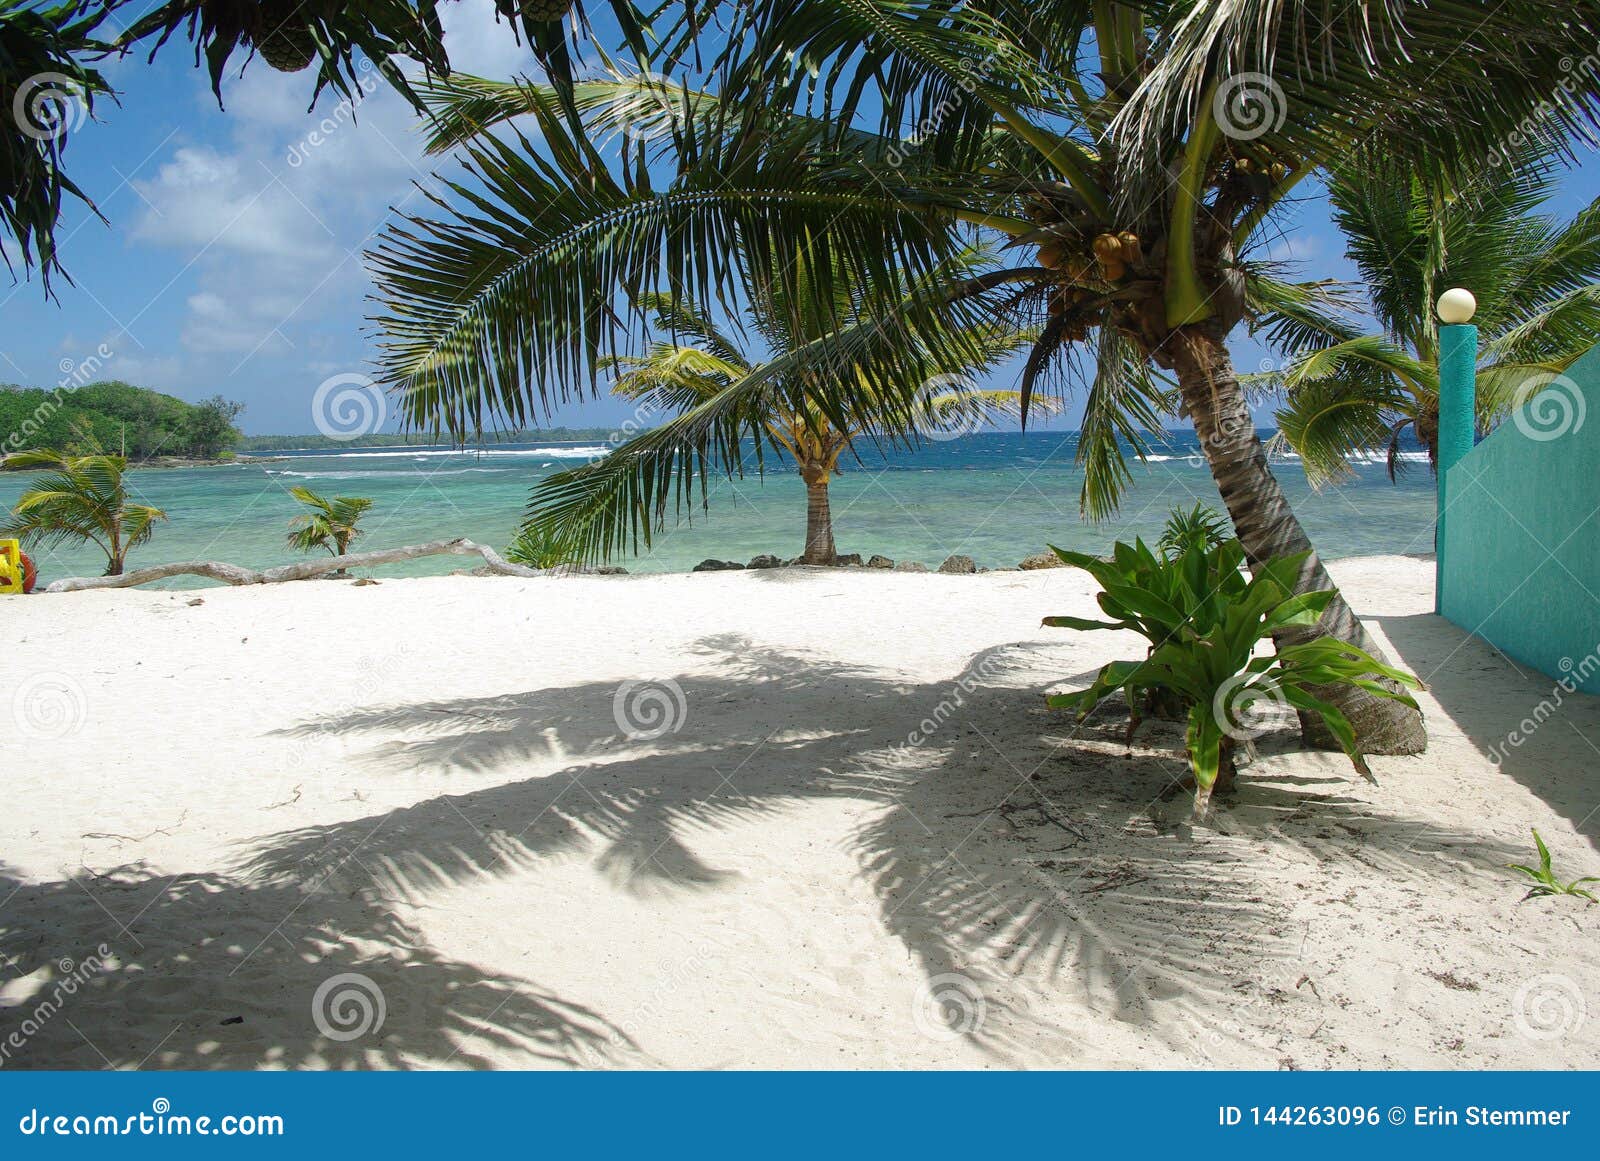 Tylny kopni?cie relaksuje. Uroczy widok Vanuatu magistrali plaża właśnie widok fale, drzewka palmowe i, uspokaja duszę